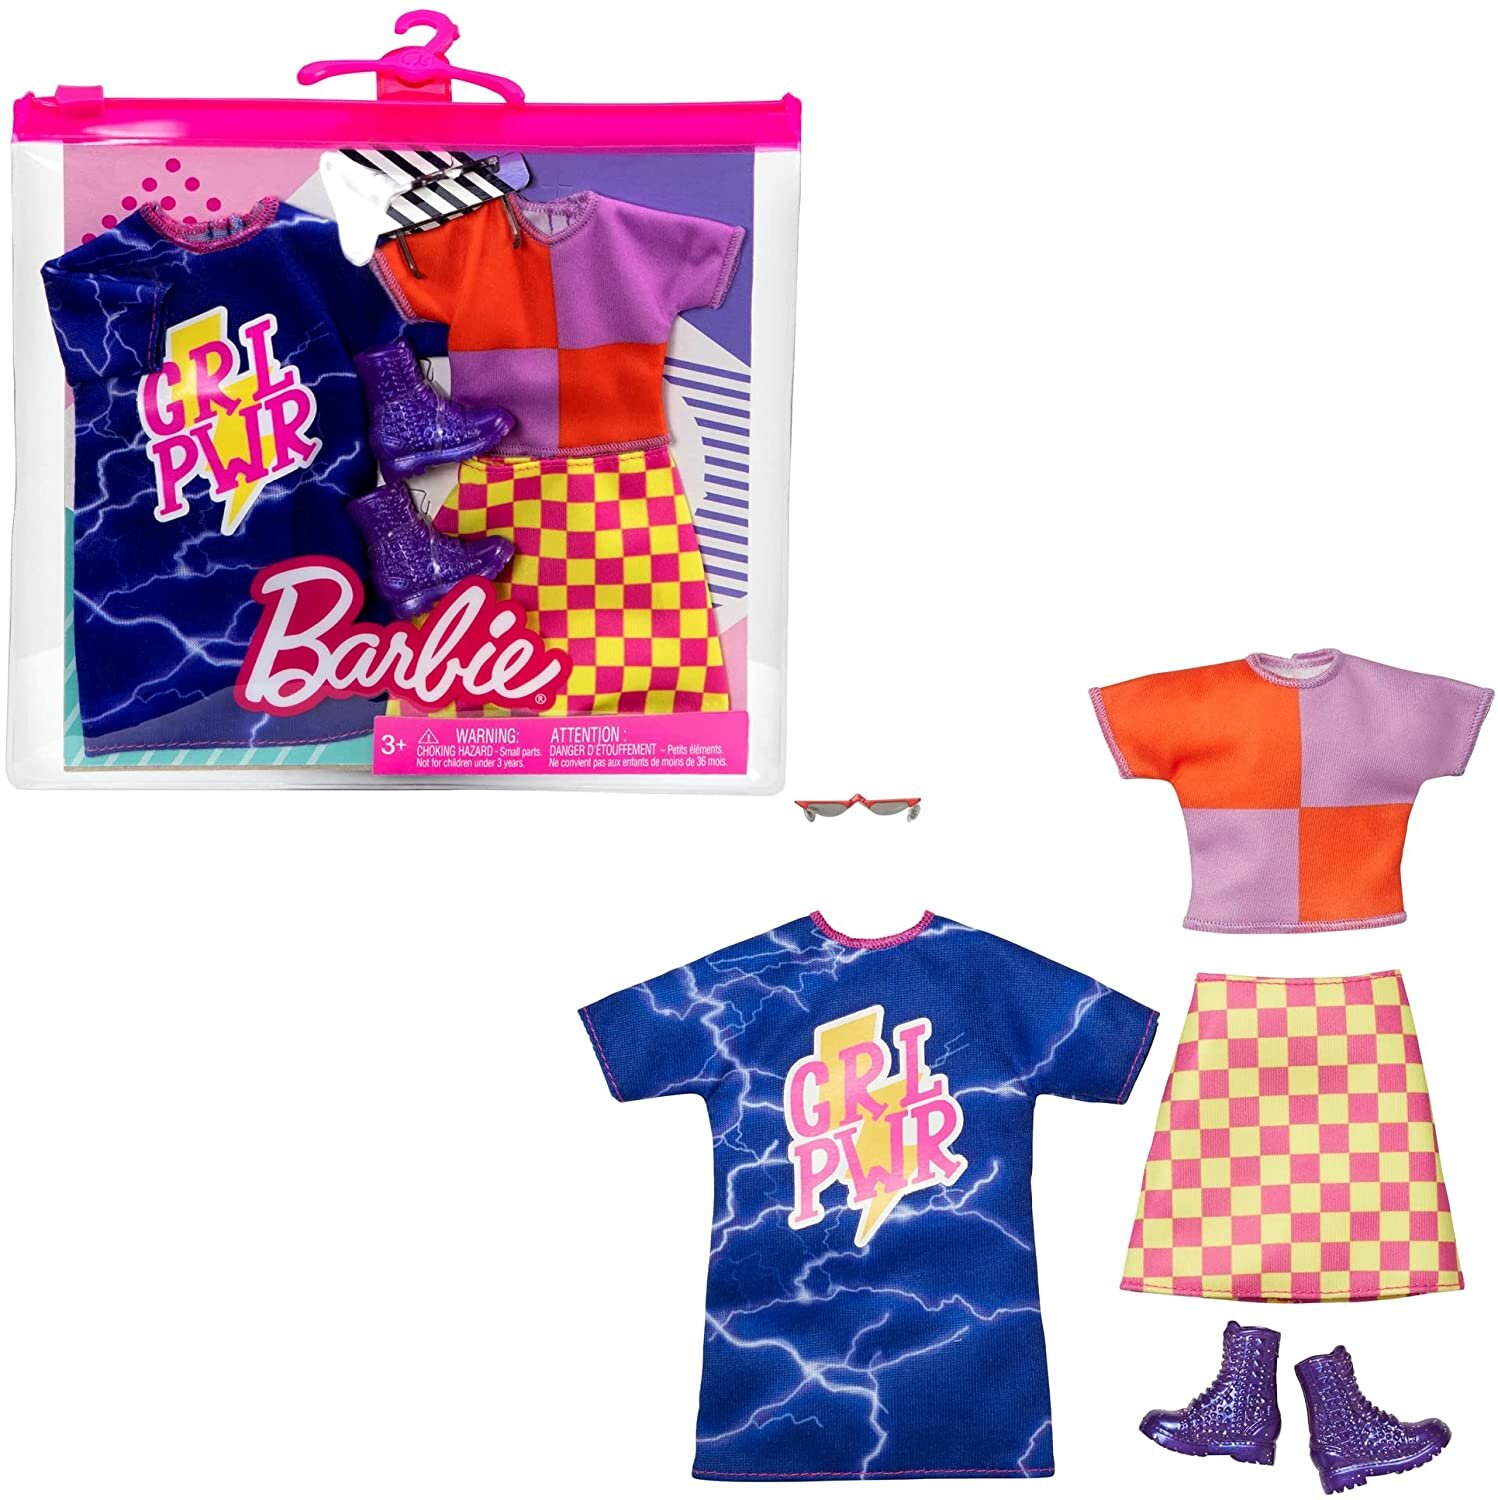 Одежда для кукол Два комплекта модной одежды и аксессуаров для куклы Барби, Barbie Girl Power